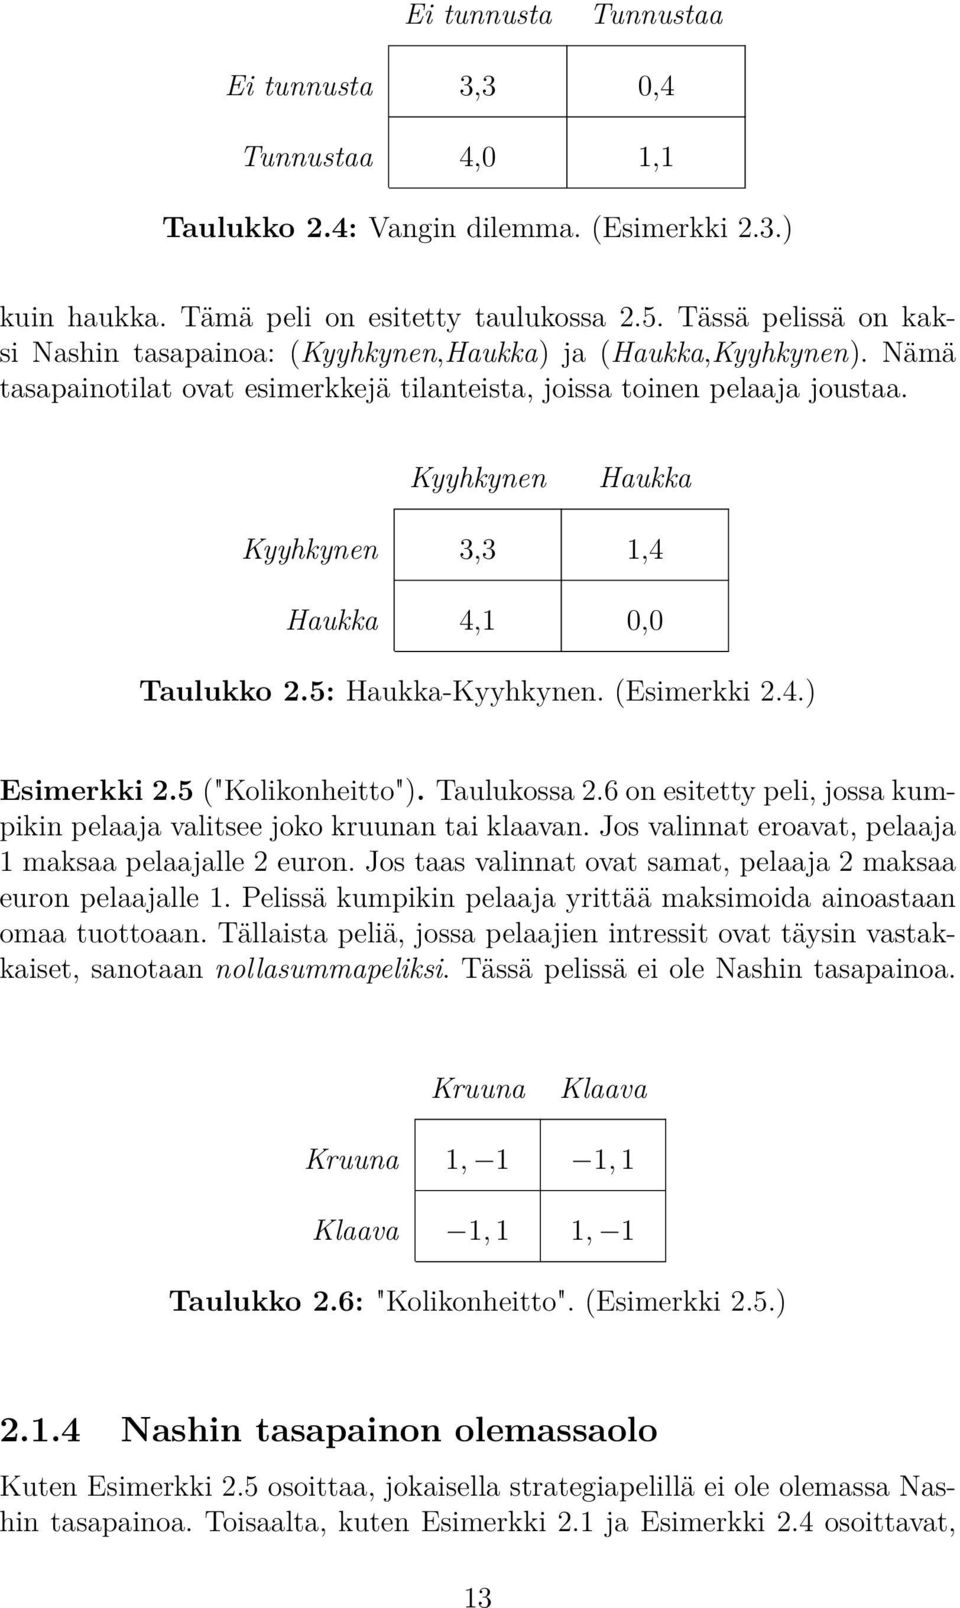 Kyyhkynen Haukka Kyyhkynen 3,3 1,4 Haukka 4,1 0,0 Taulukko 2.5: Haukka-Kyyhkynen. (Esimerkki 2.4.) Esimerkki 2.5 ("Kolikonheitto"). Taulukossa 2.